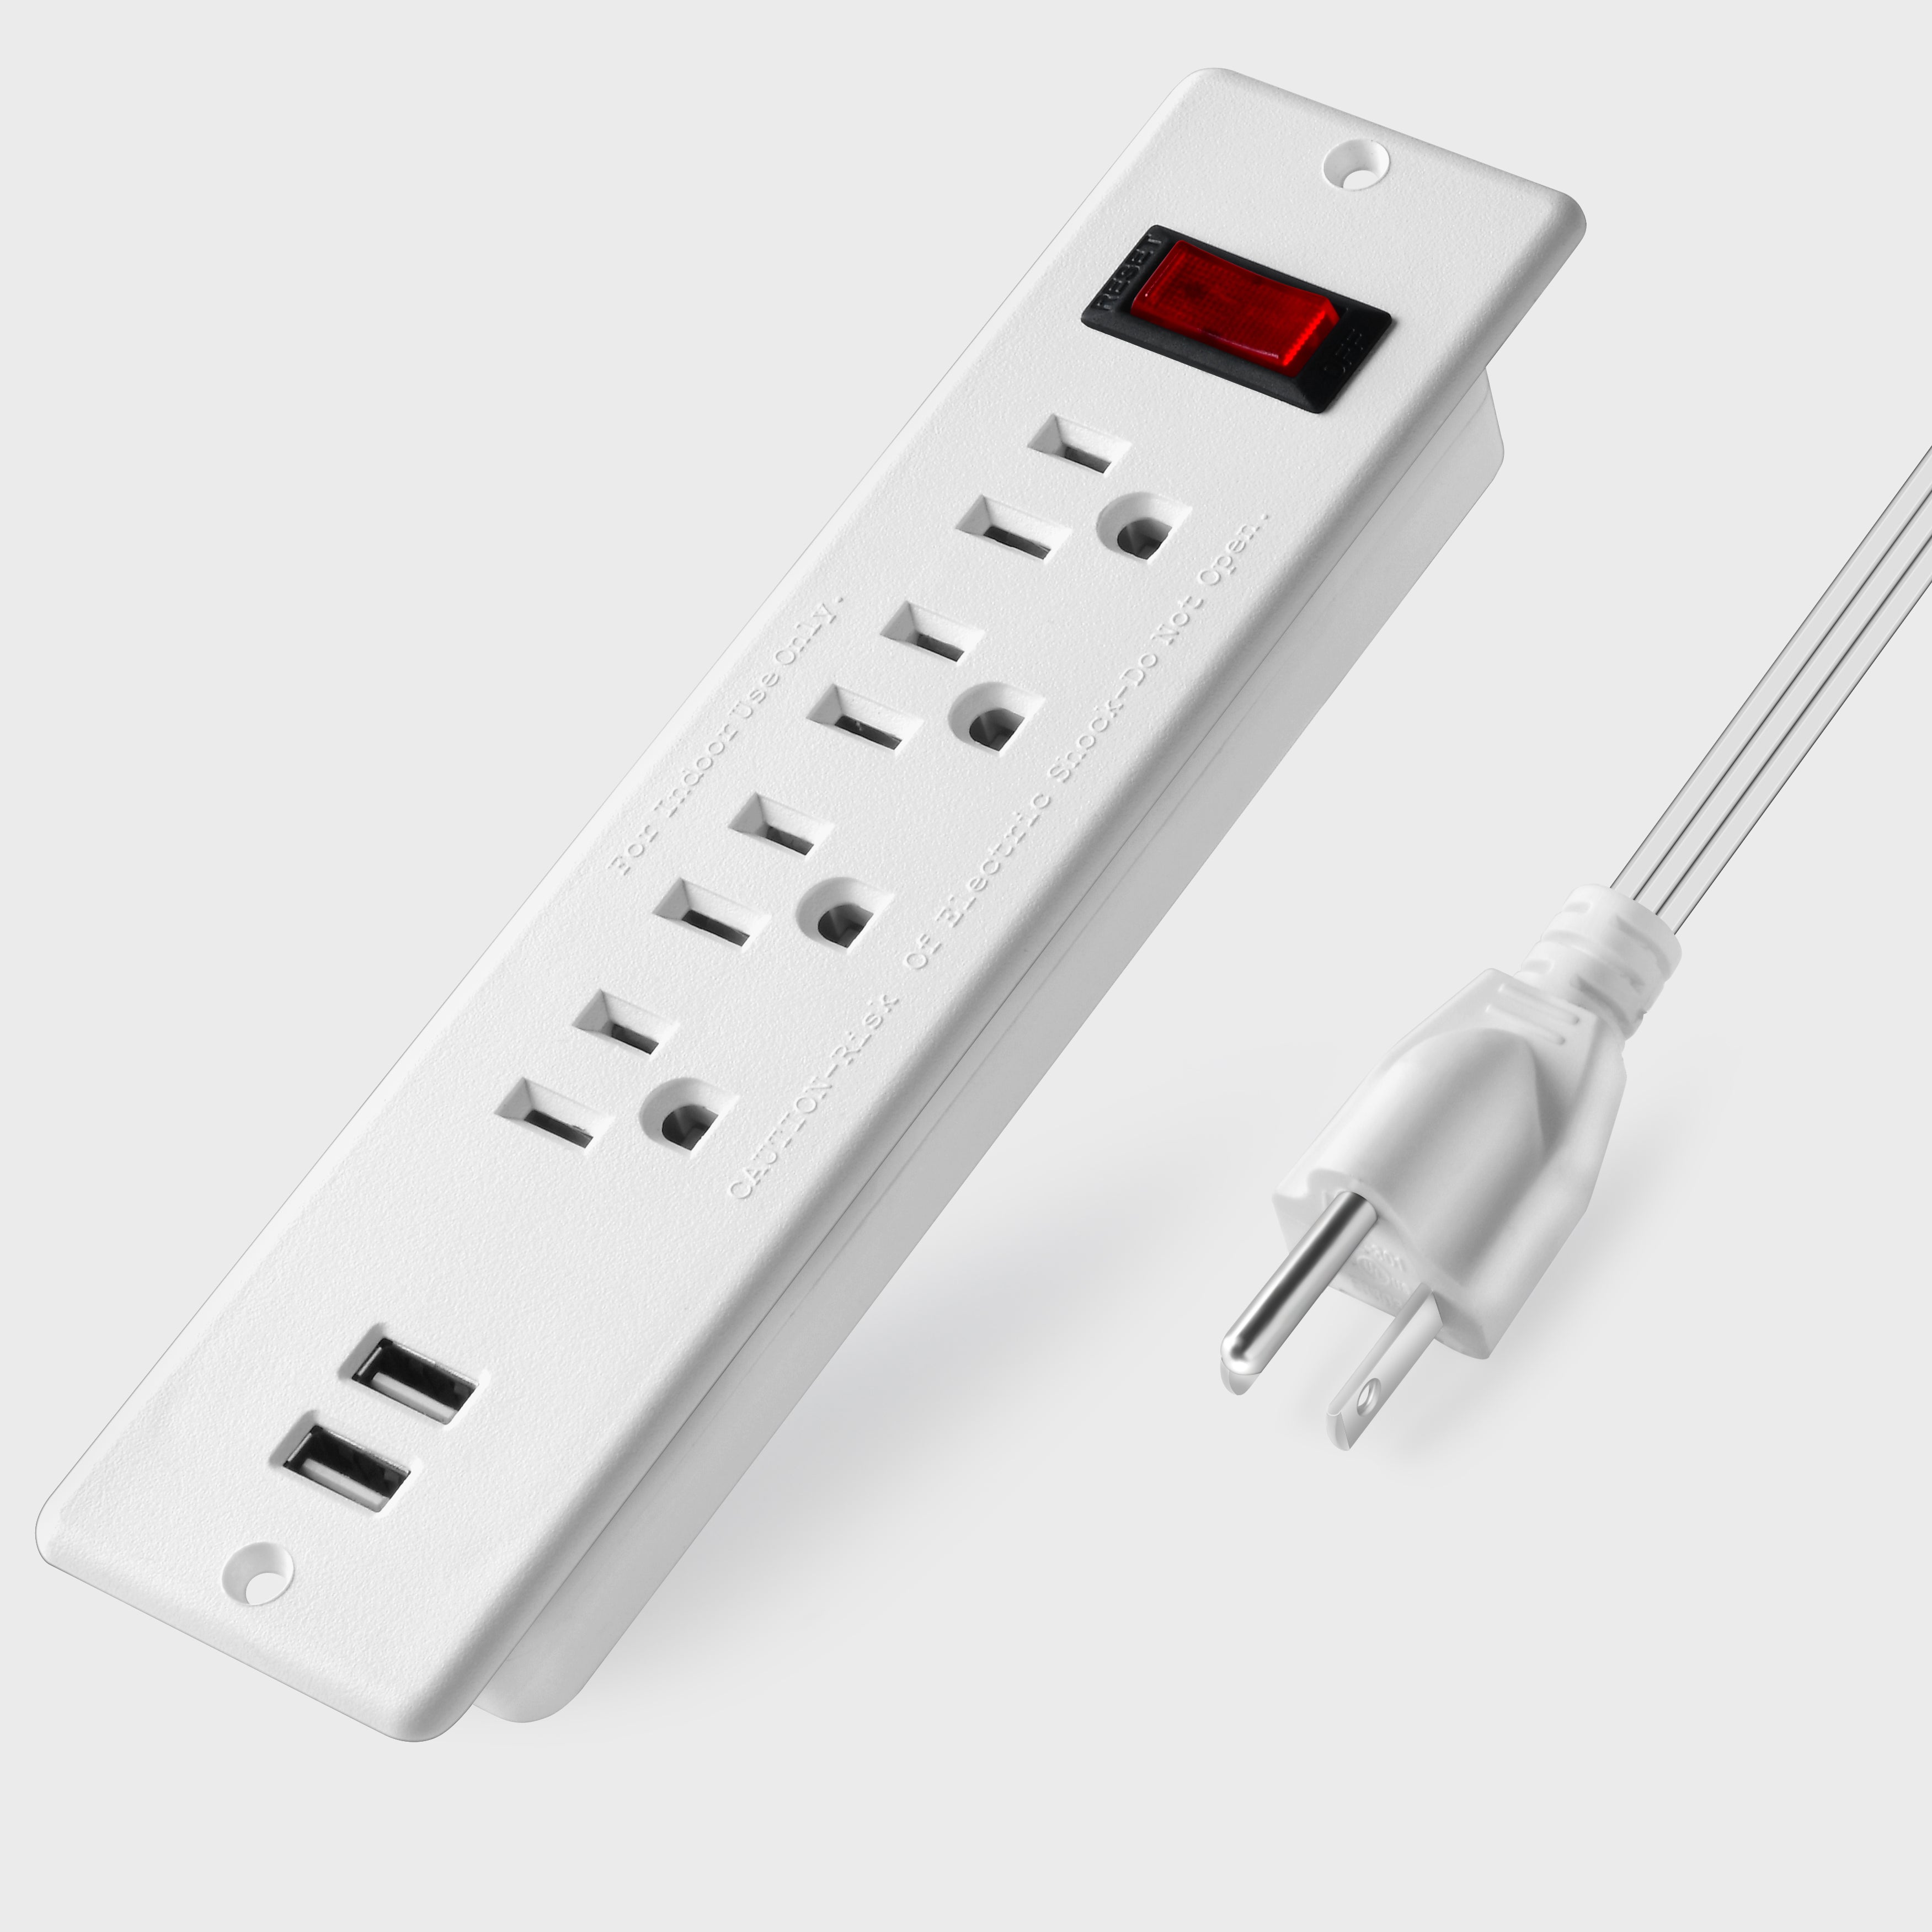 4 LEAF Electric Socket USB Power Strip Recessed Power Socket Mountable Outlet Extender